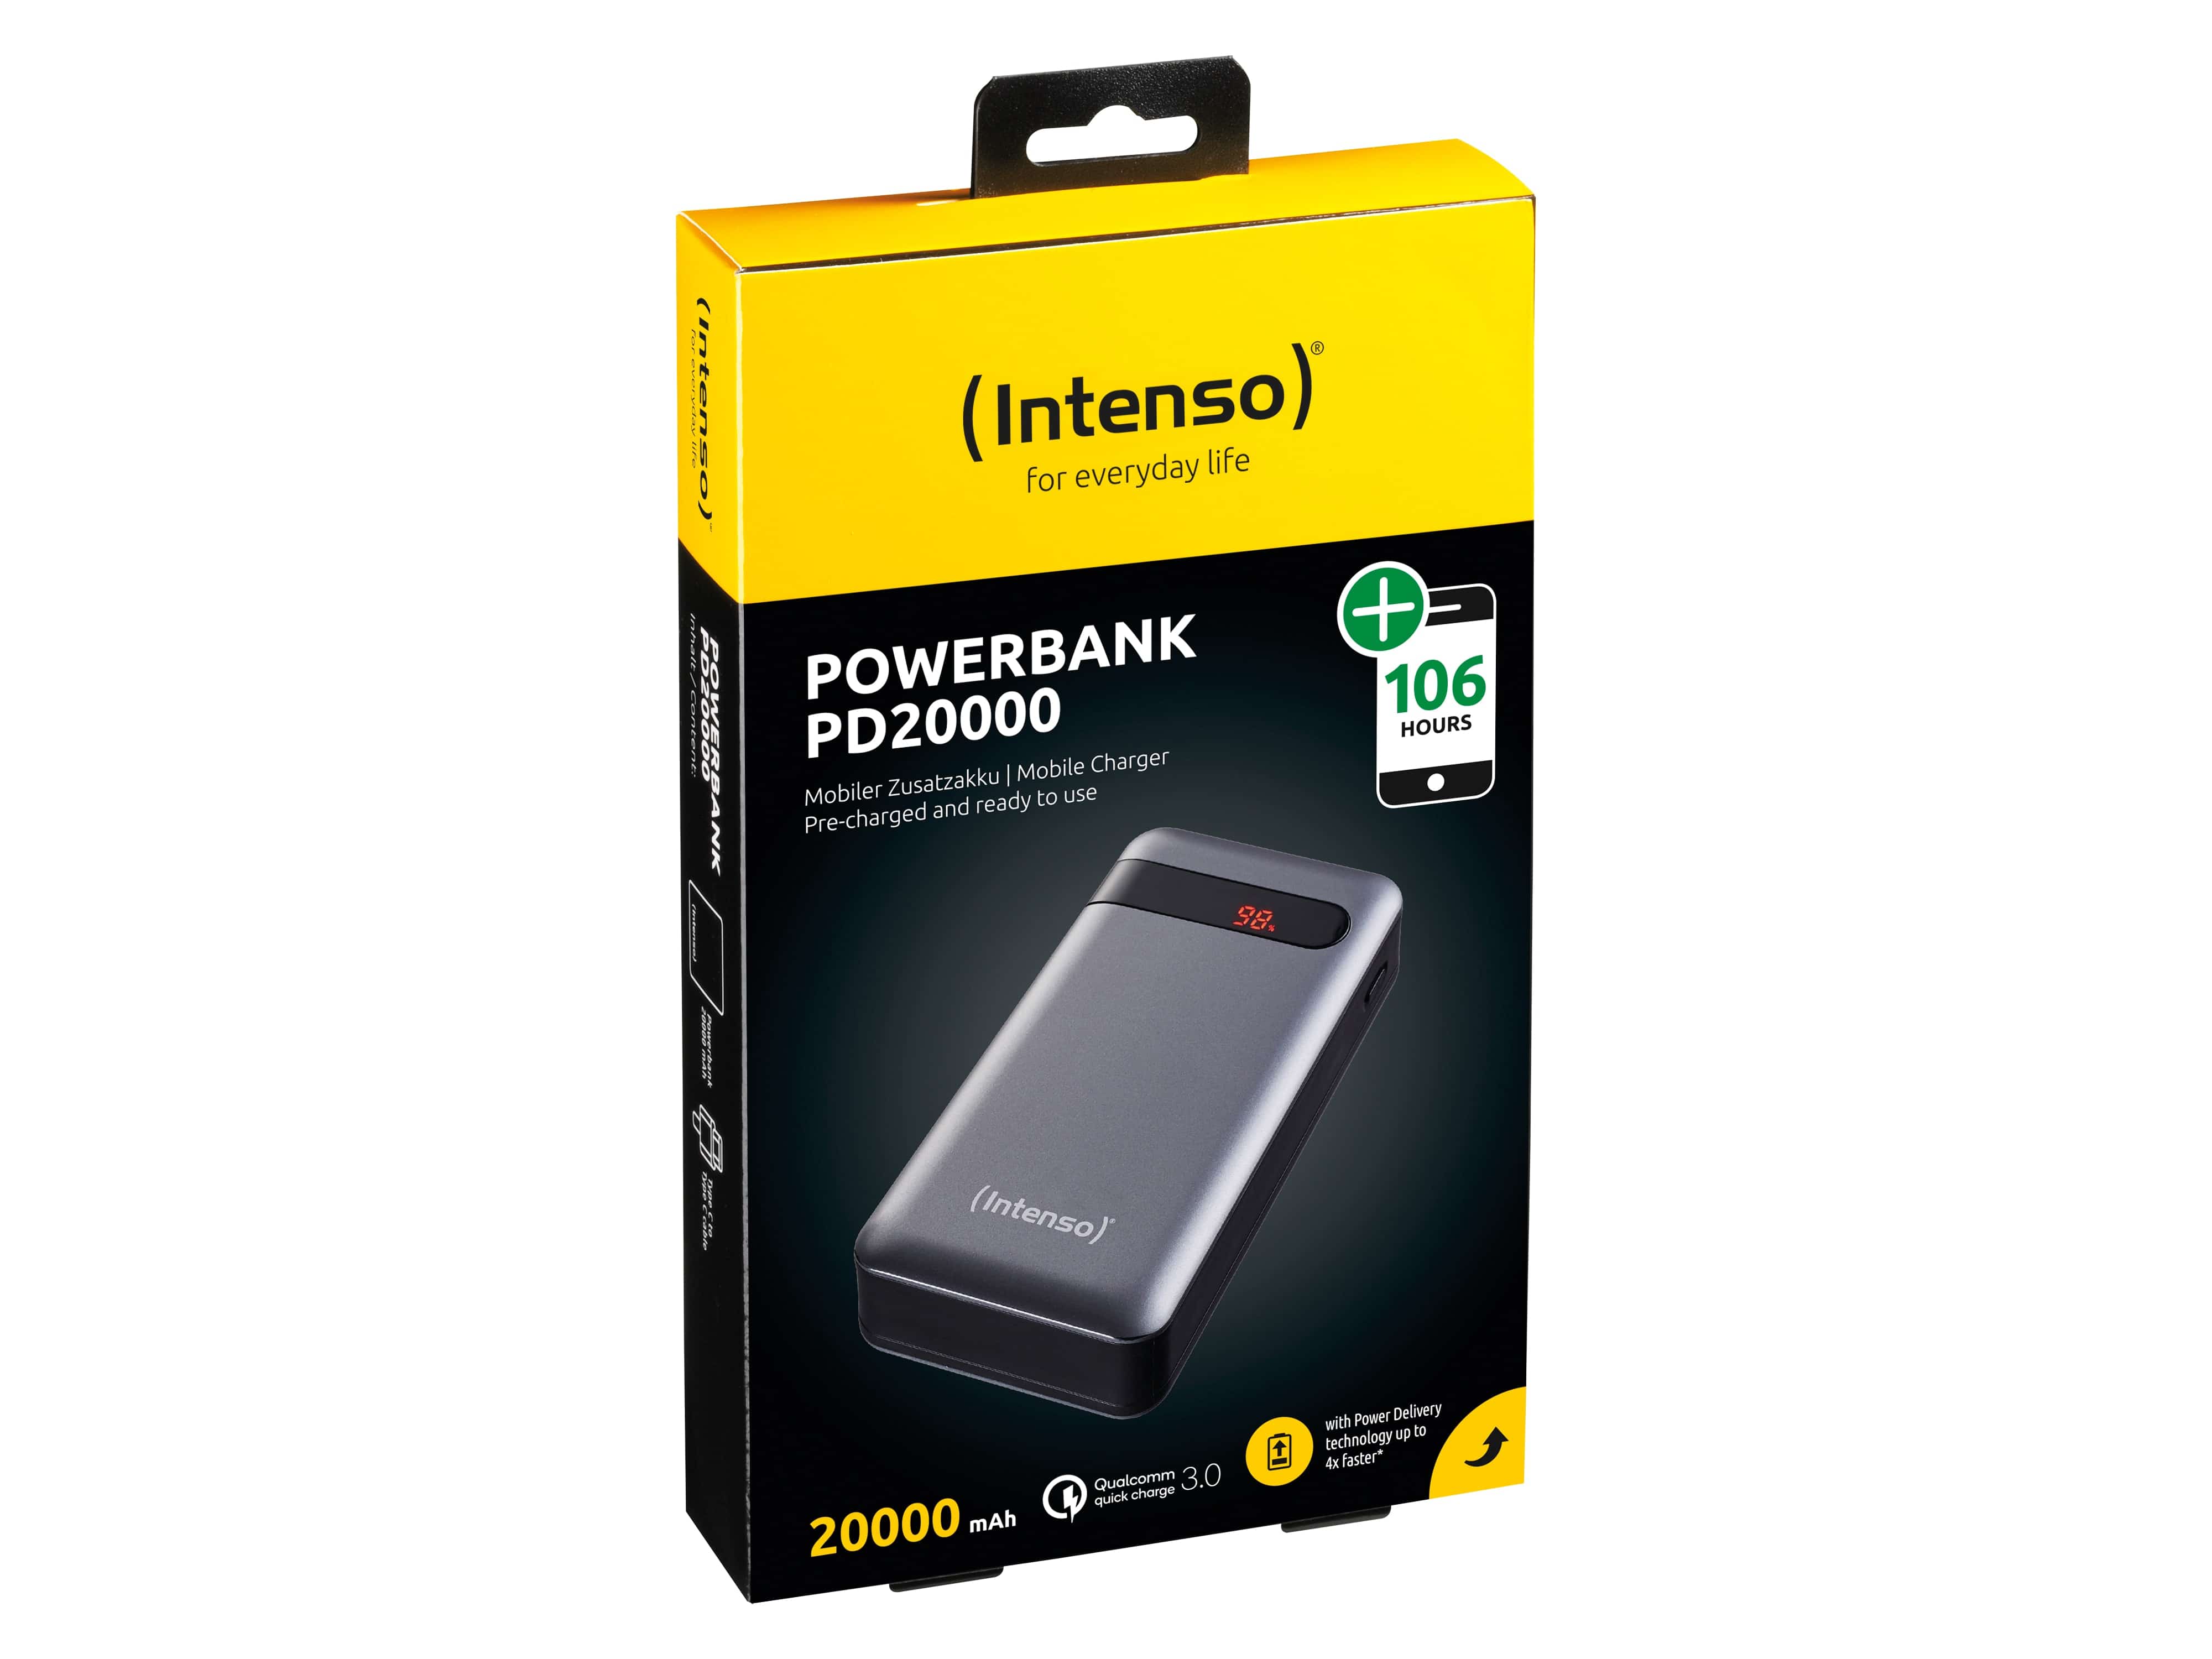 INTENSO USB Powerbank 7332354 PD 20000, 20.000mAh, anthrazit